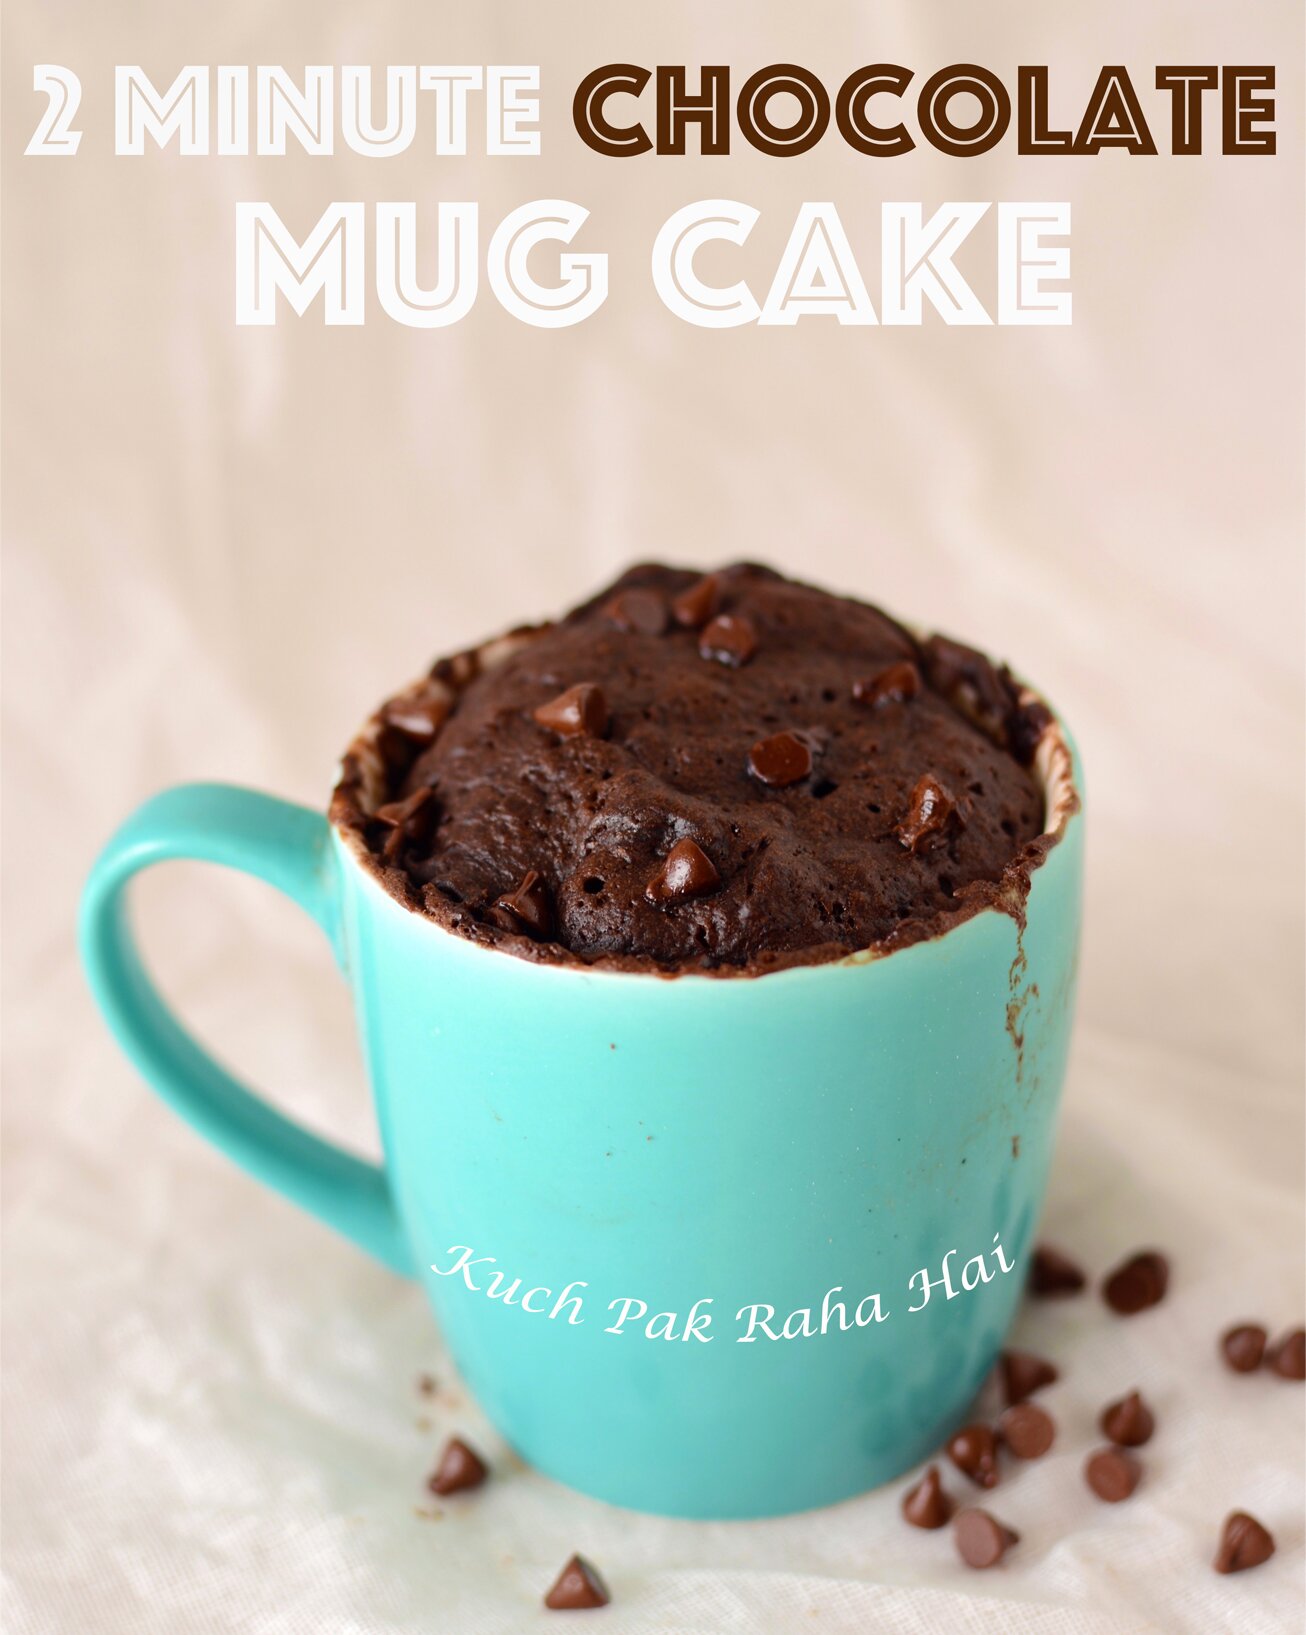 A 2 Minute Chocolate Mug Cake - Fill My Recipe Book